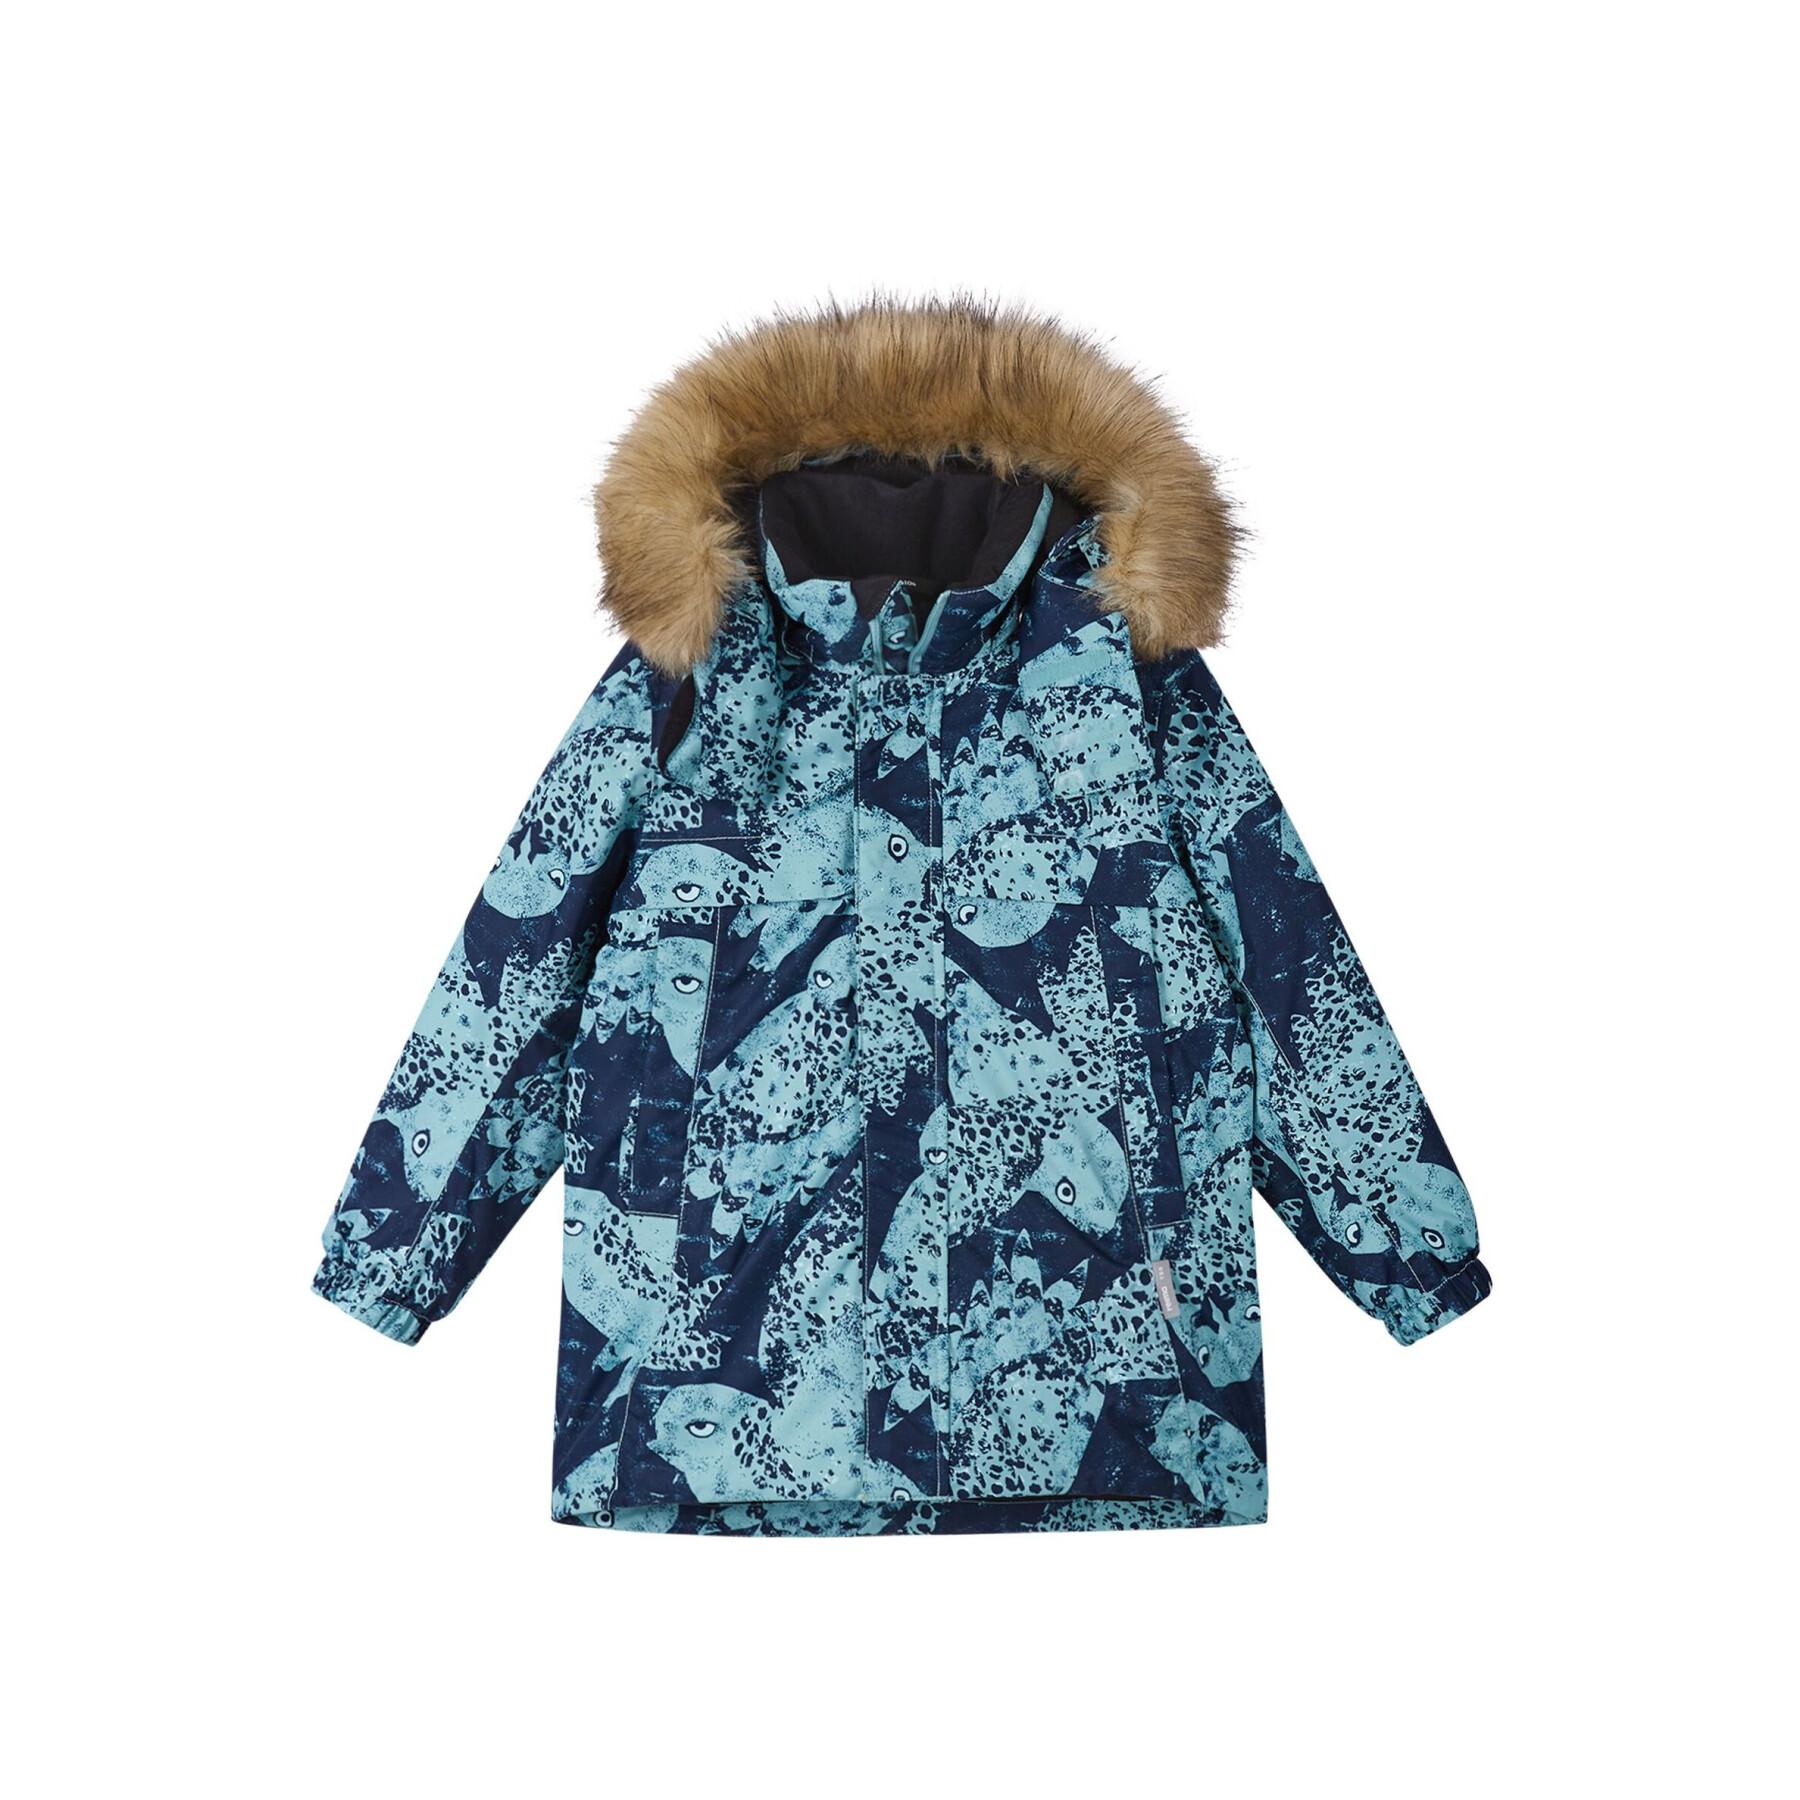 Waterproof jacket for children Reima Reima tec Musko